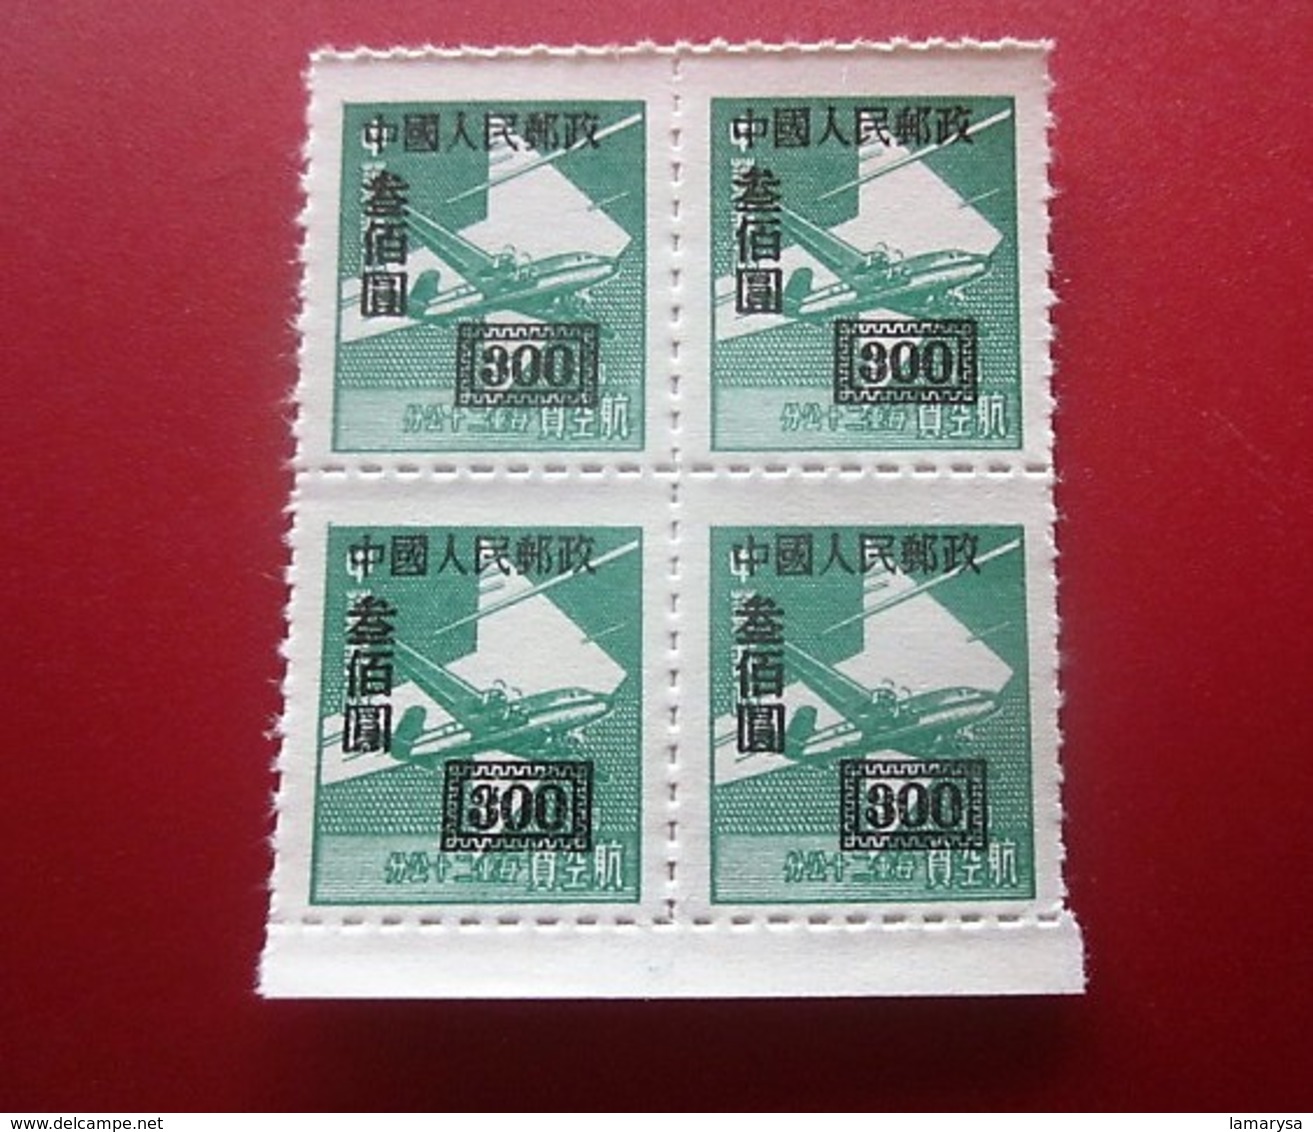 Chine Bloc 4Timbres-Stamps-République Populaire-Poste Aérienne-Asia China-Popular Republic Airmail-亚洲中国第4区邮票热门共和国航空邮件 - Luftpost